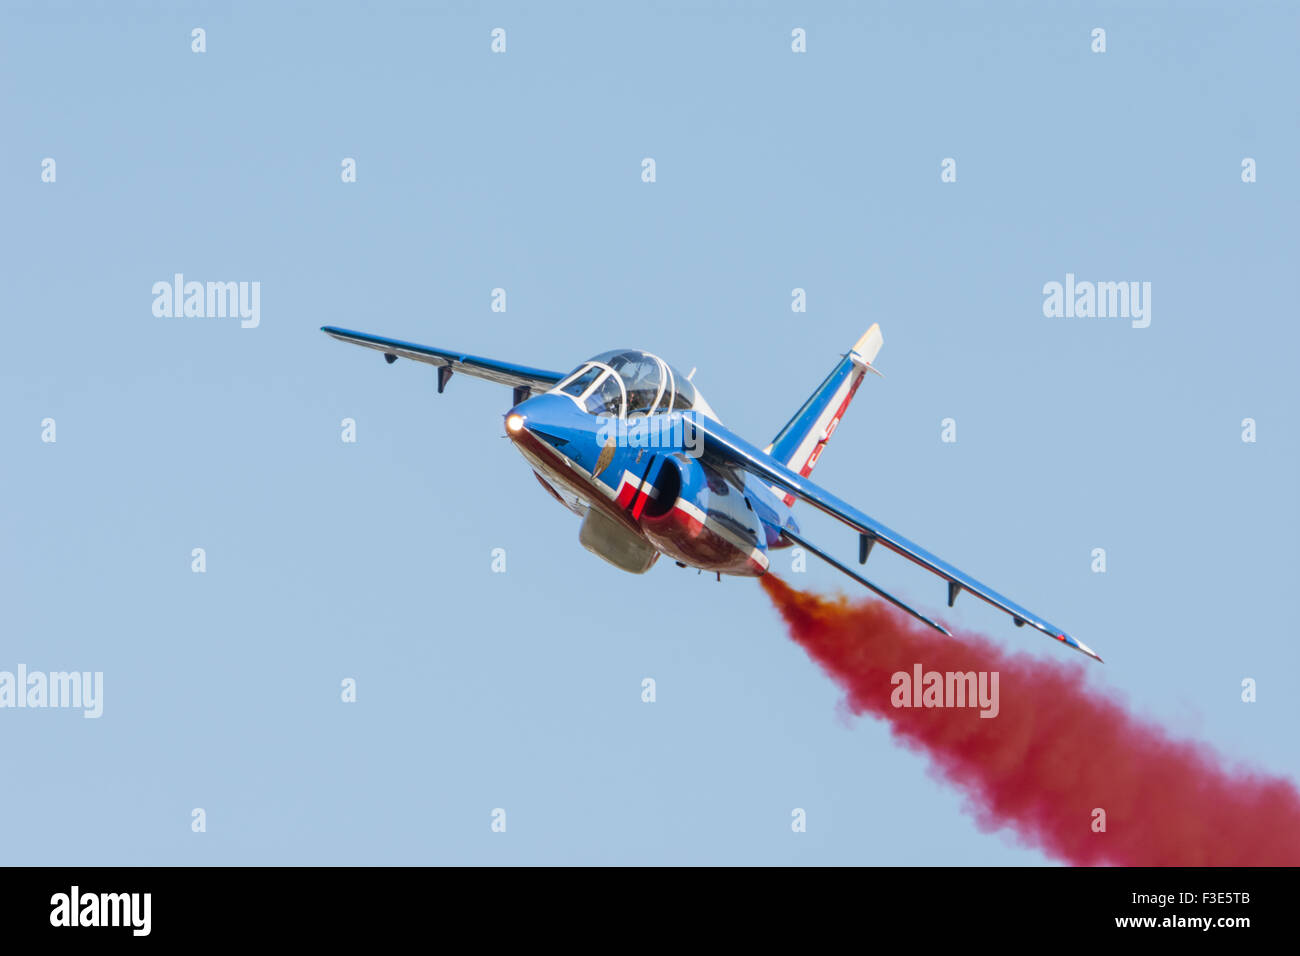 Alpha Jet Patrouille de France Fairford RIAT 2015 Stock Photo